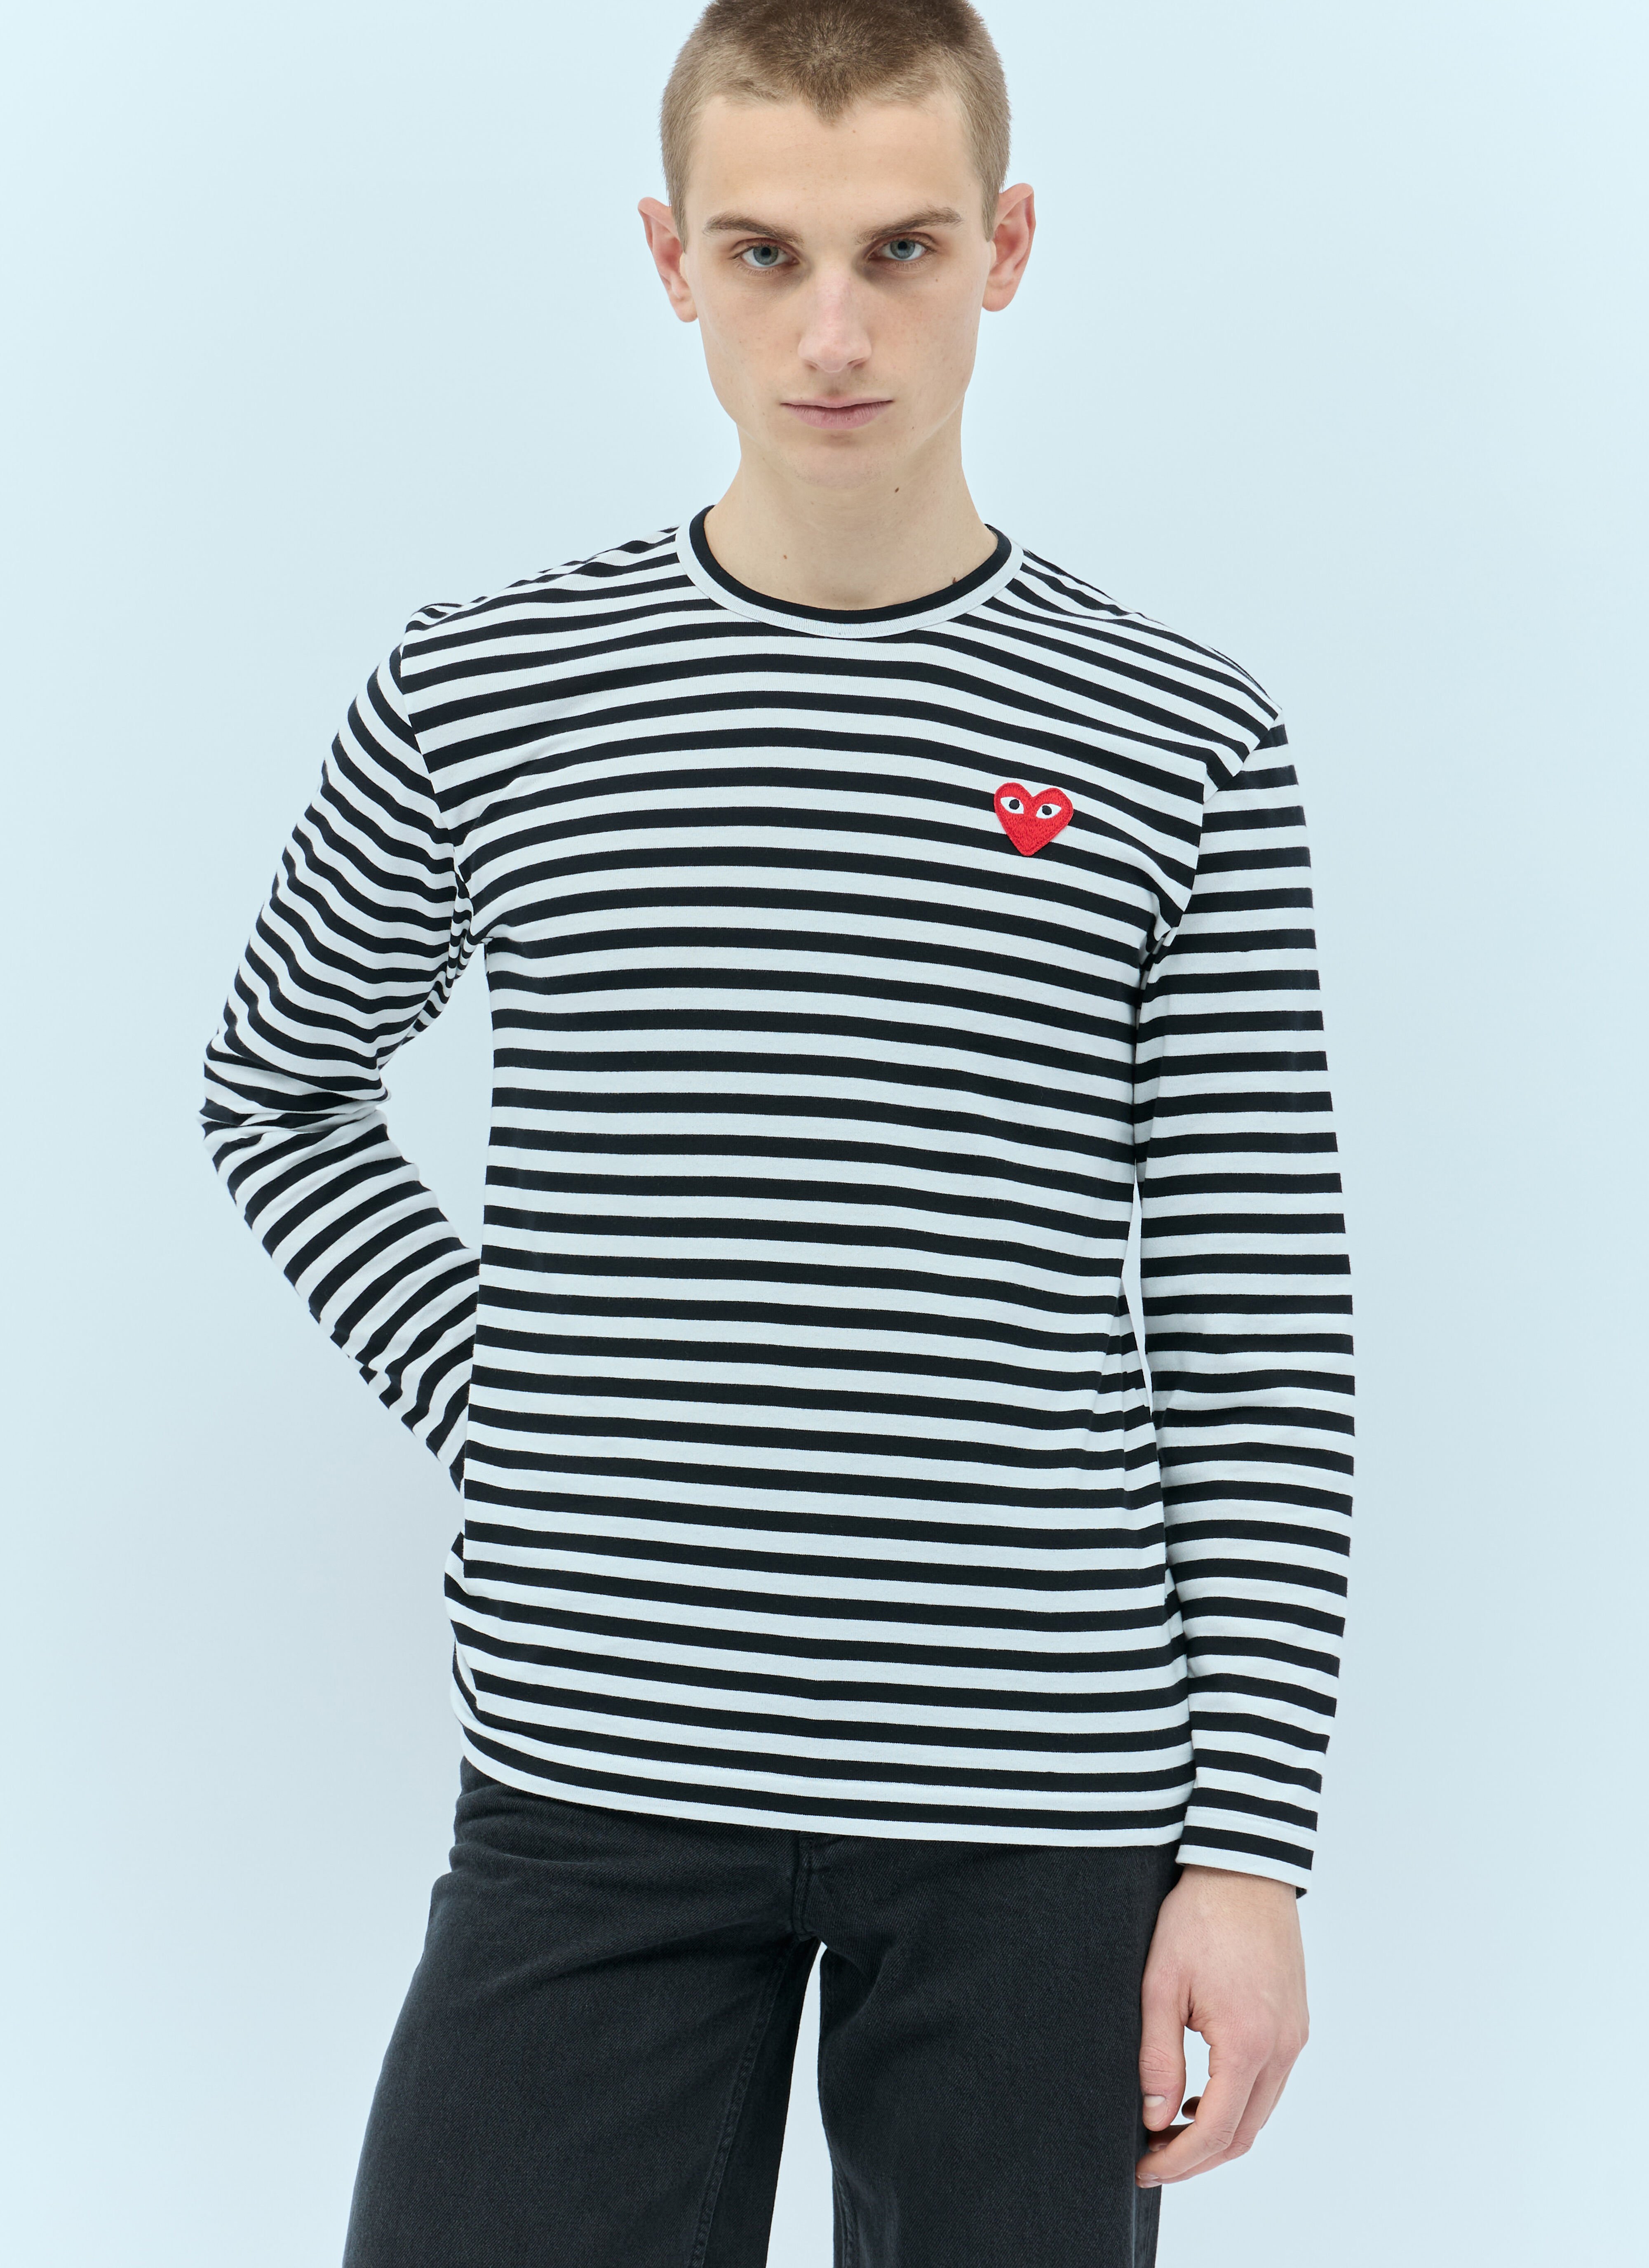 Jean Paul Gaultier Striped Long-Sleeve T-Shirt White jpg0256013